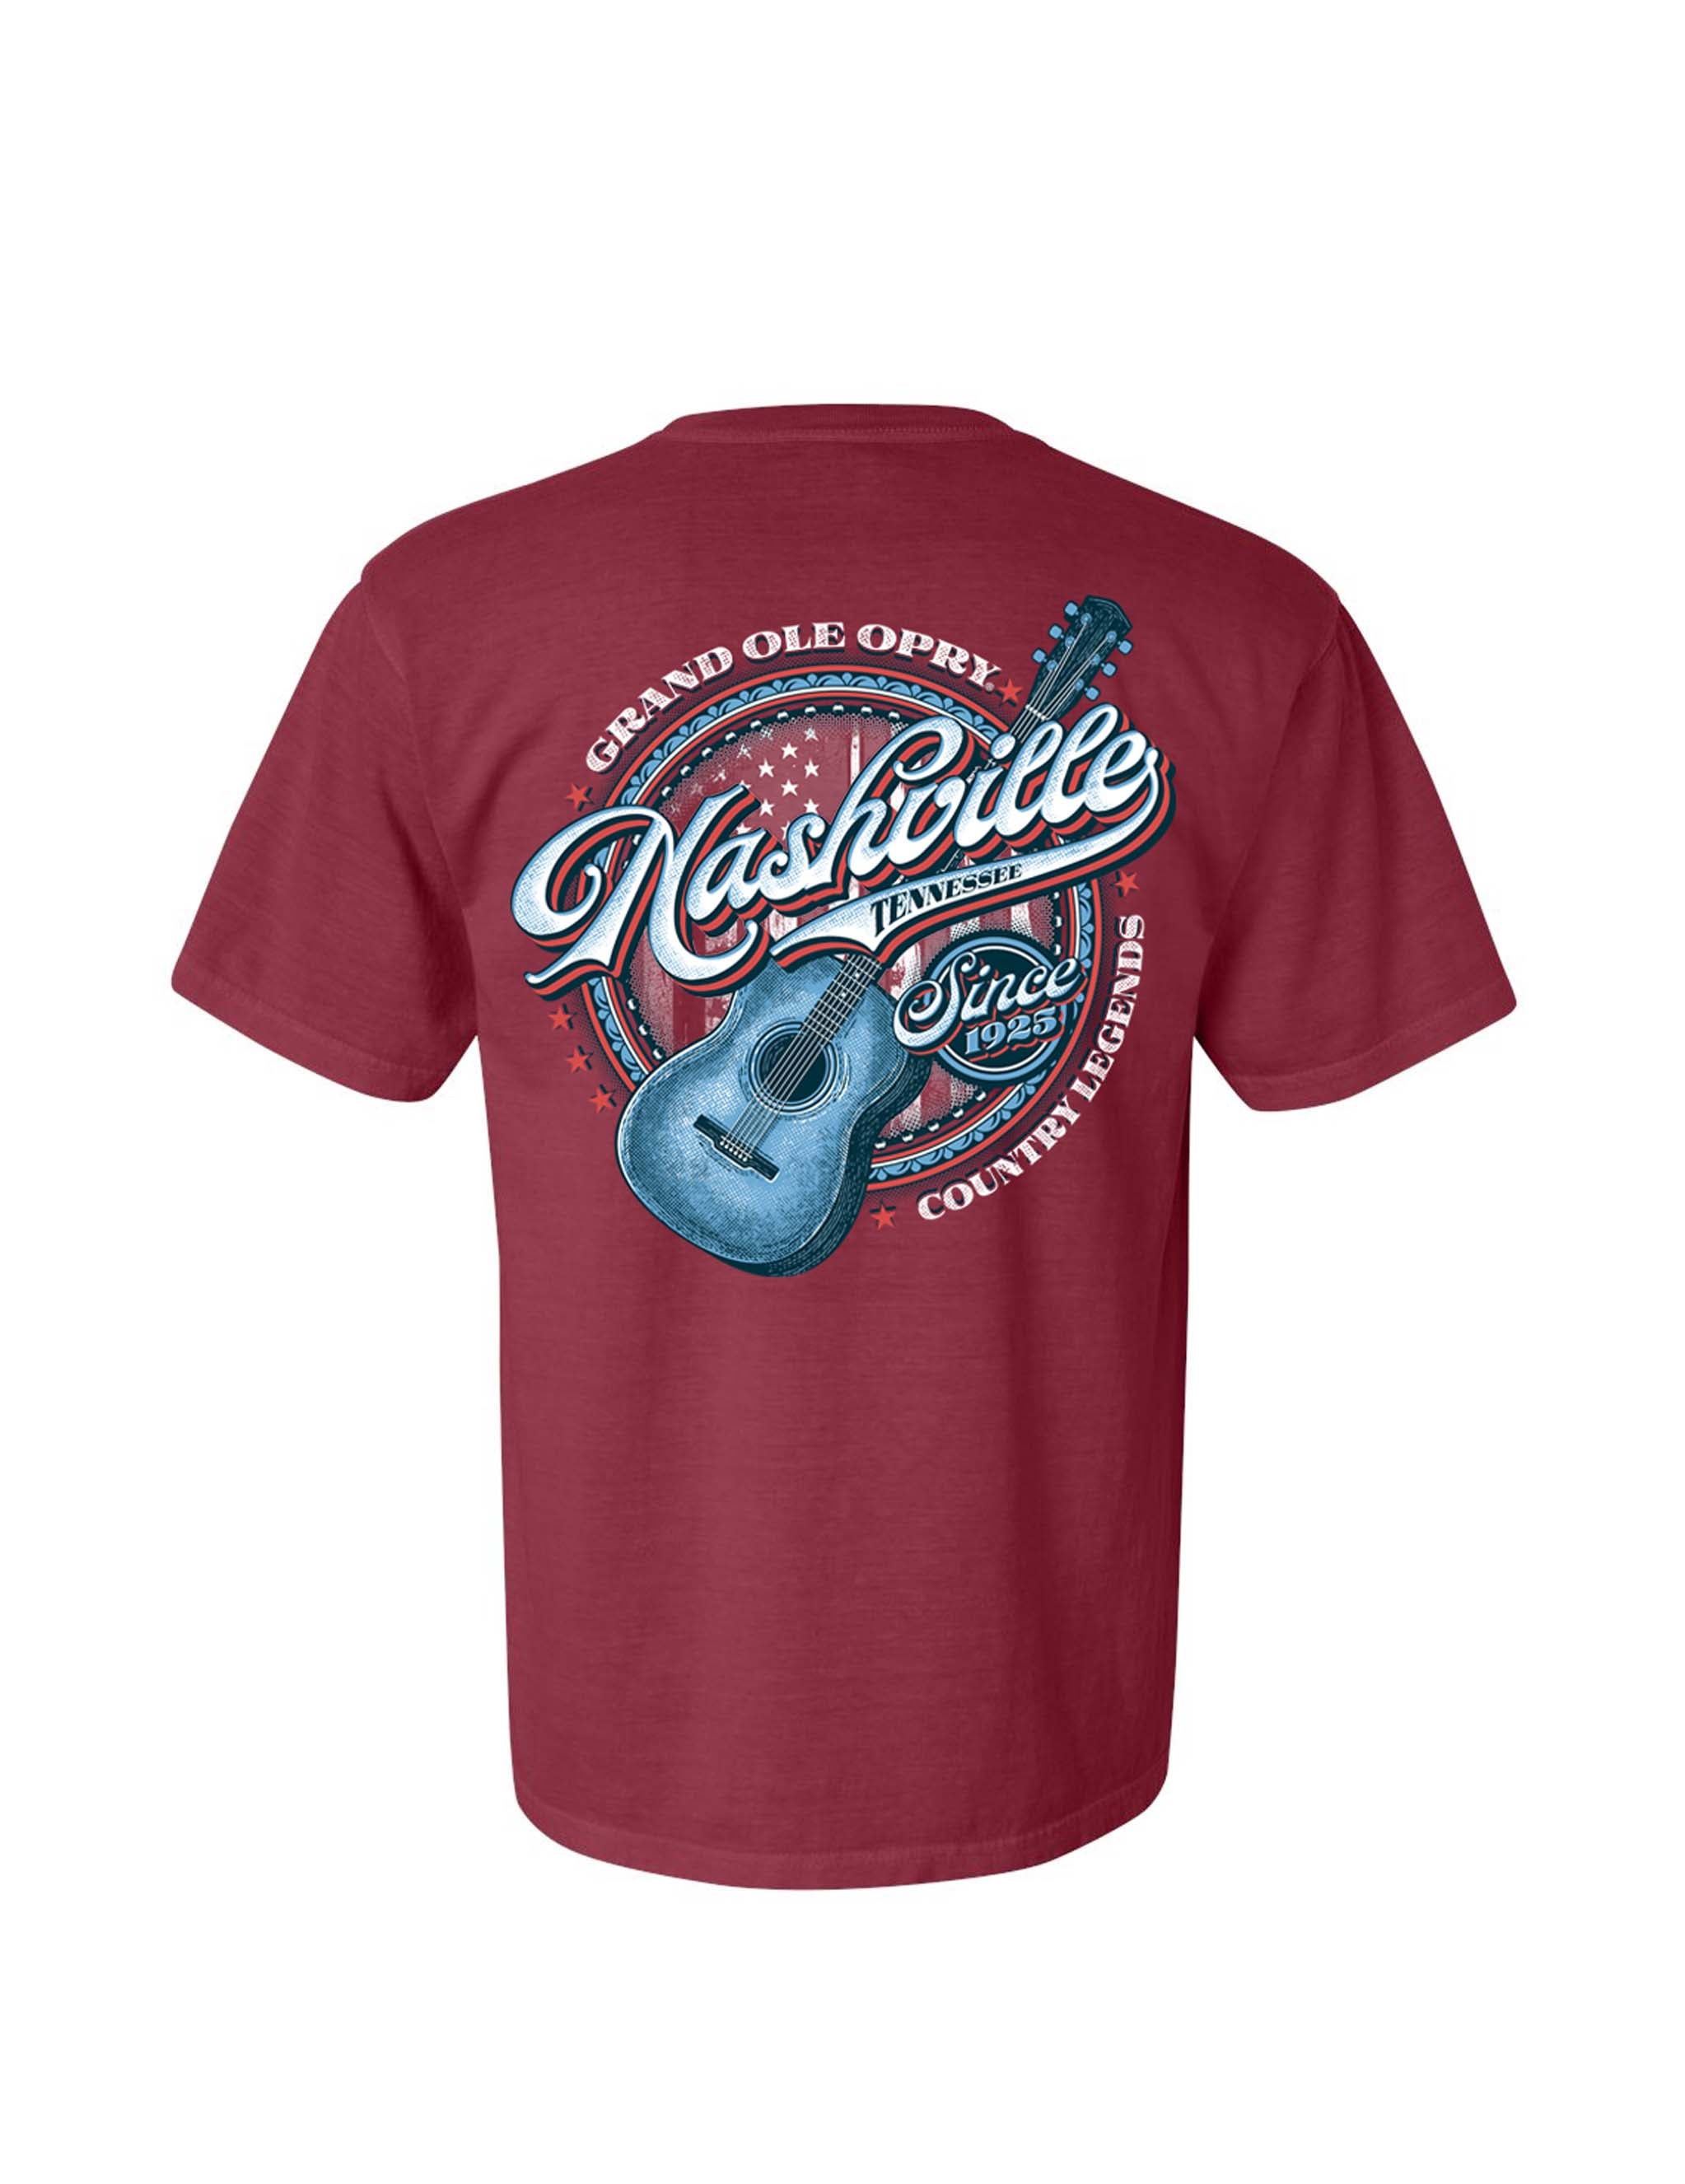 Opry Nashville Guitar T-Shirt